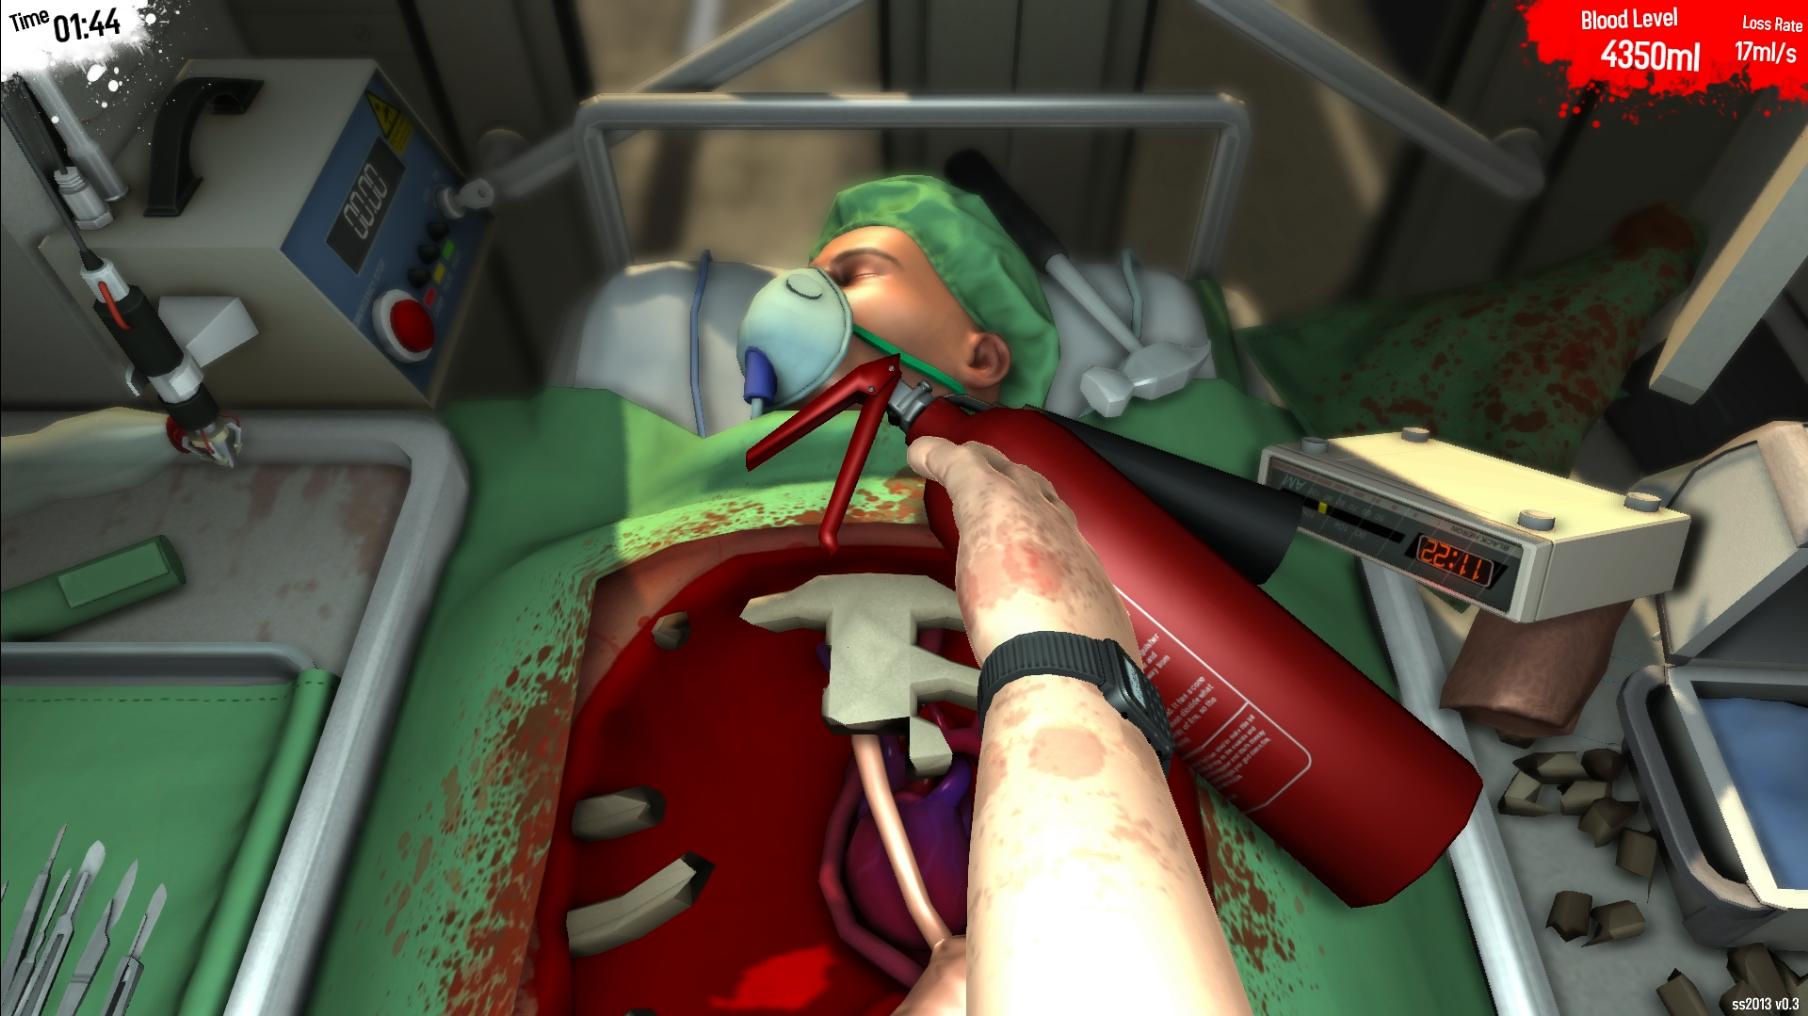 Surgeon Simulator, annunciata la versione PlayStation 4